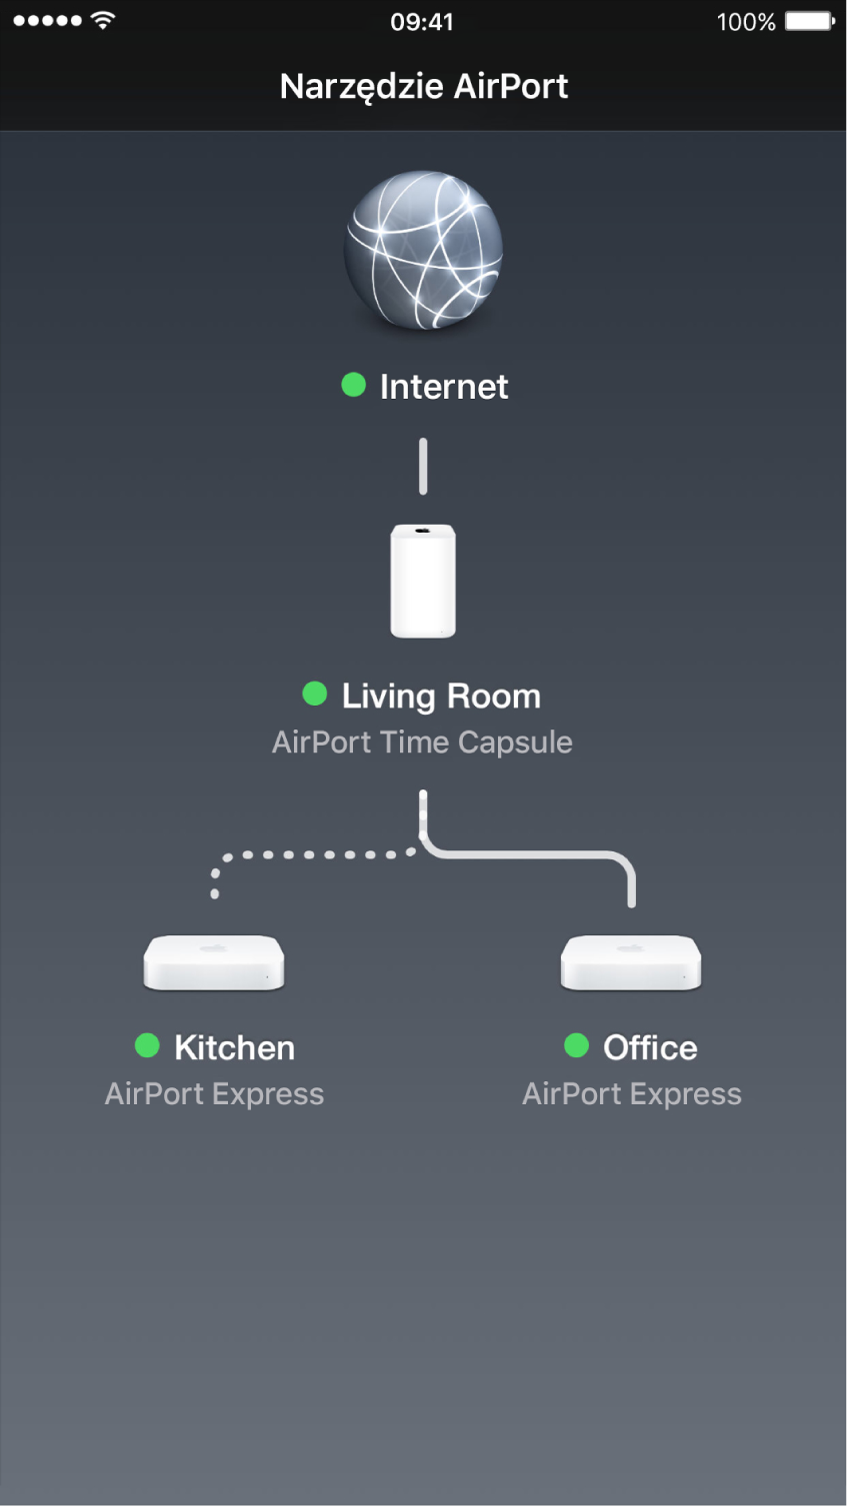 Schemat graficzny sieci, wyświetlany przez Narzędzie AirPort w systemie iOS.